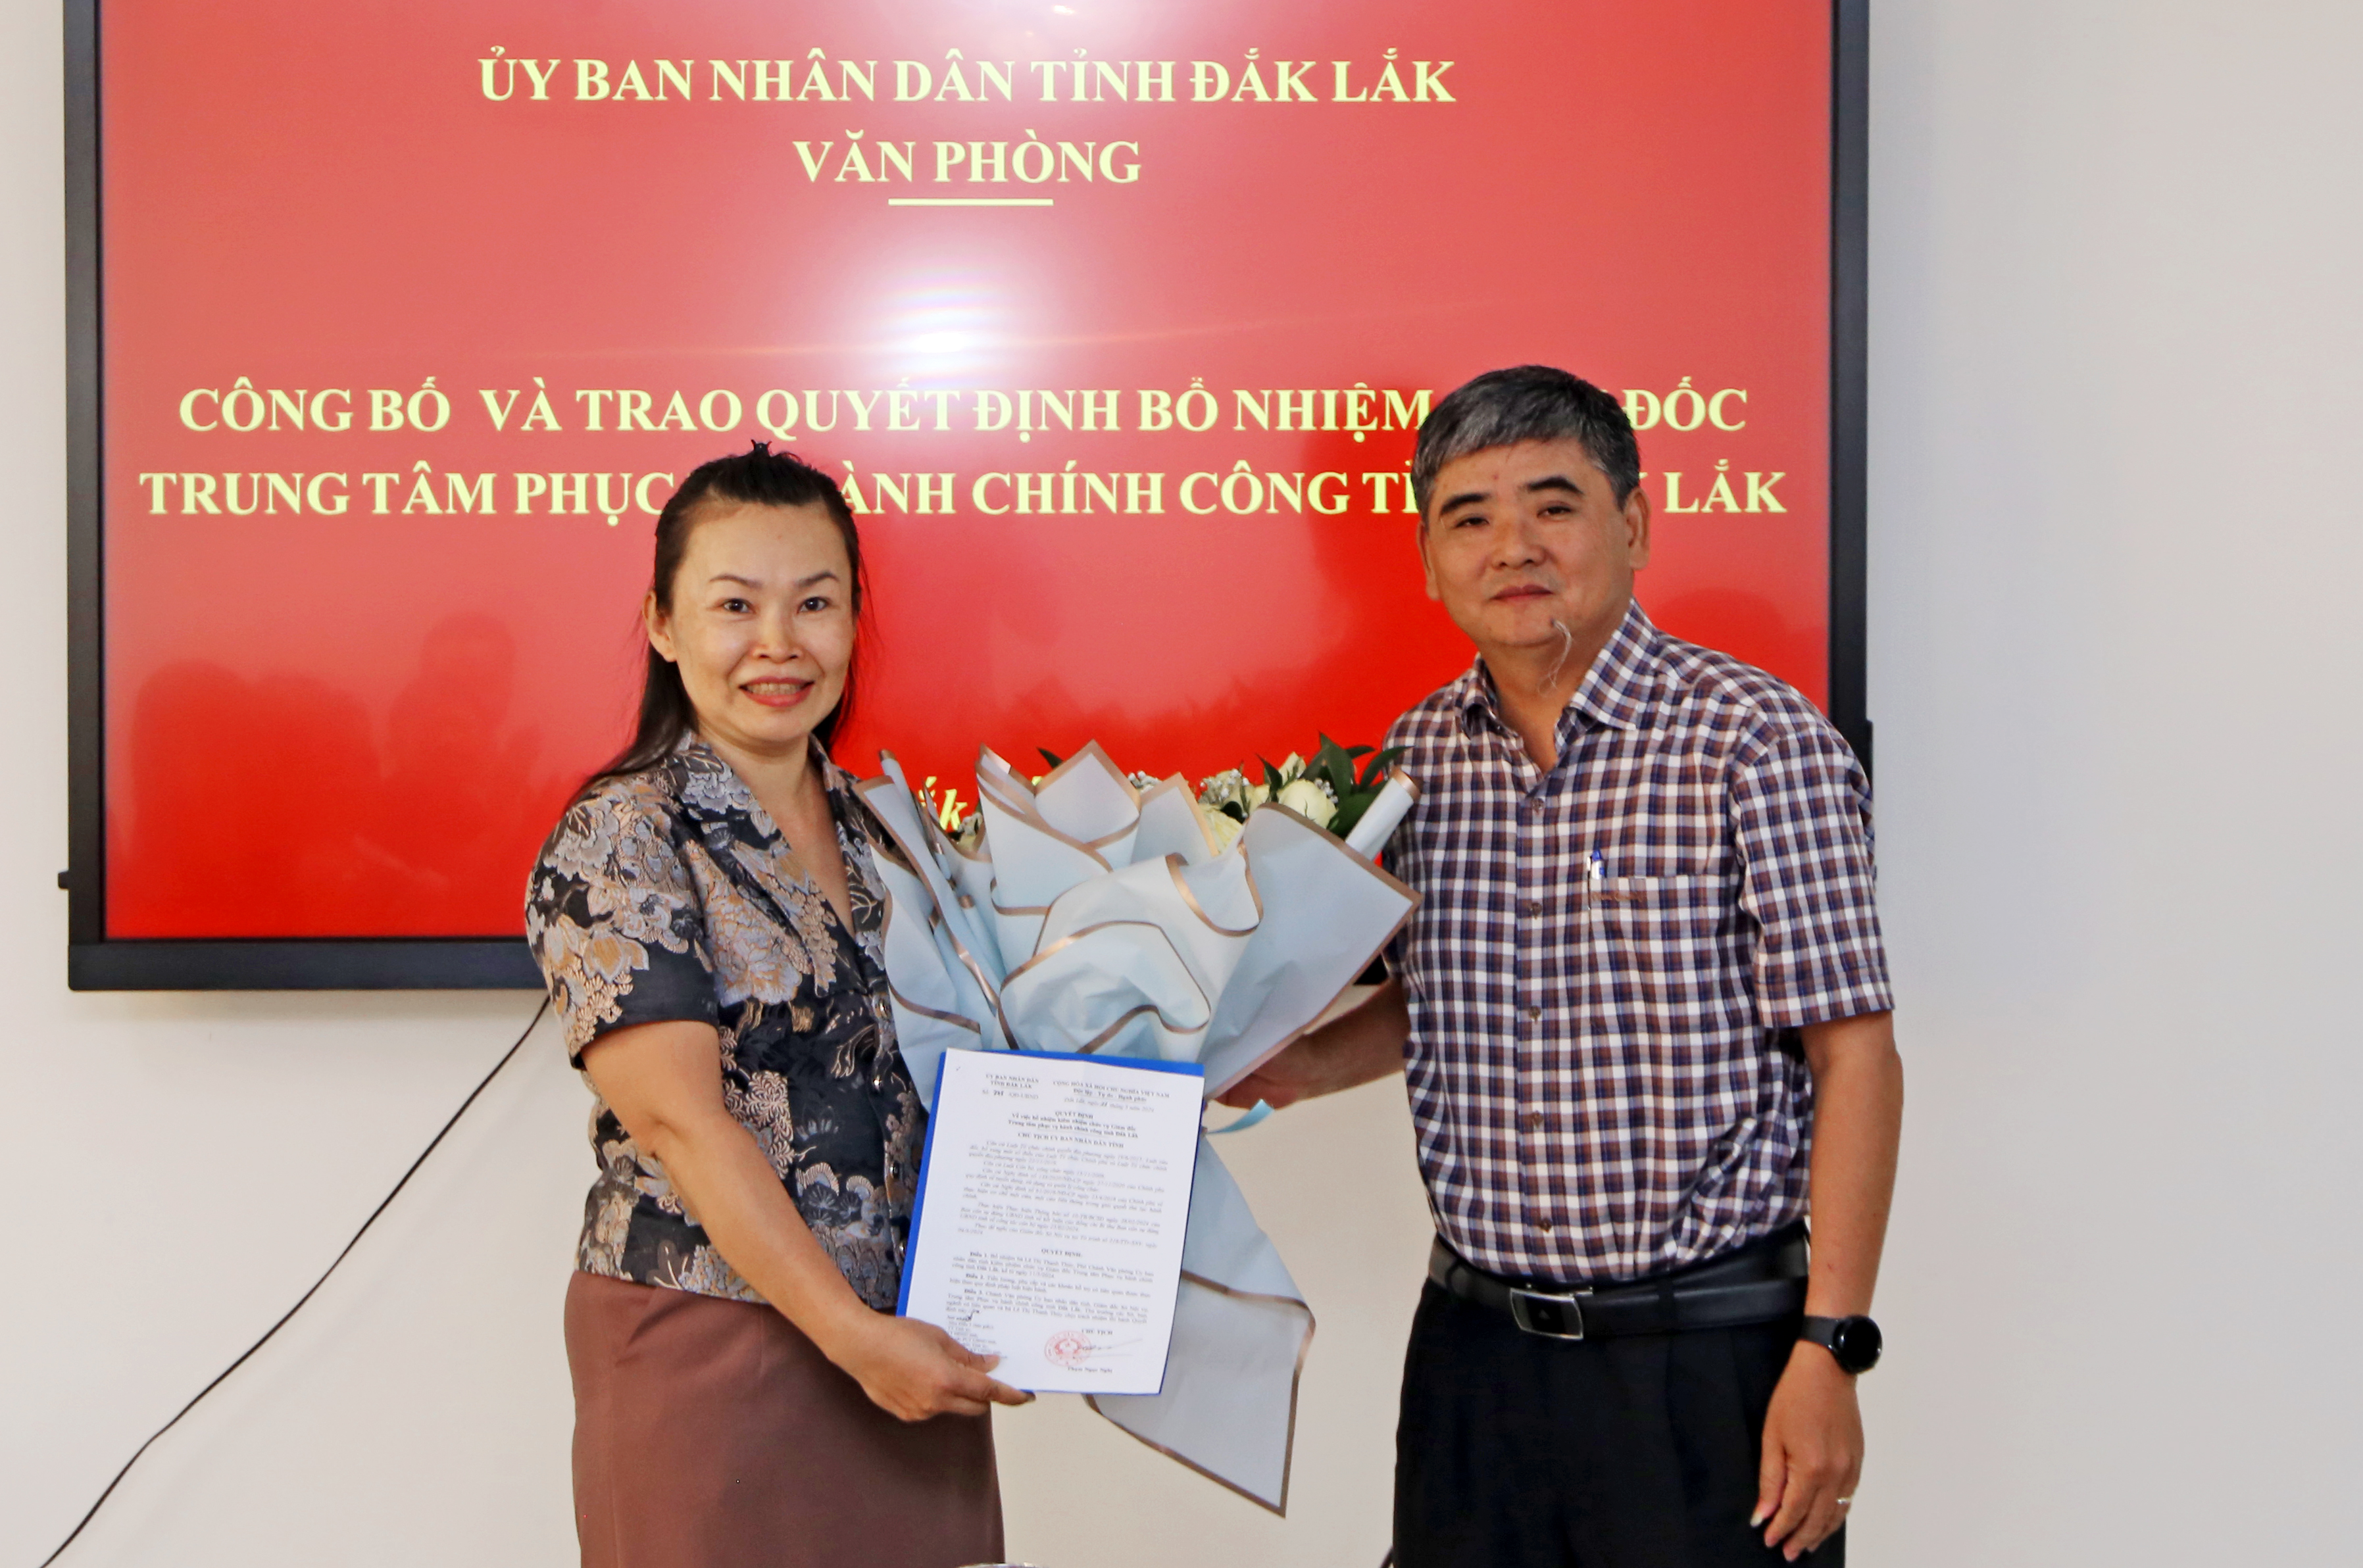 Công bố và trao Quyết định bổ nhiệm Giám đốc Trung tâm Phục vụ hành chính công tỉnh Đắk Lắk